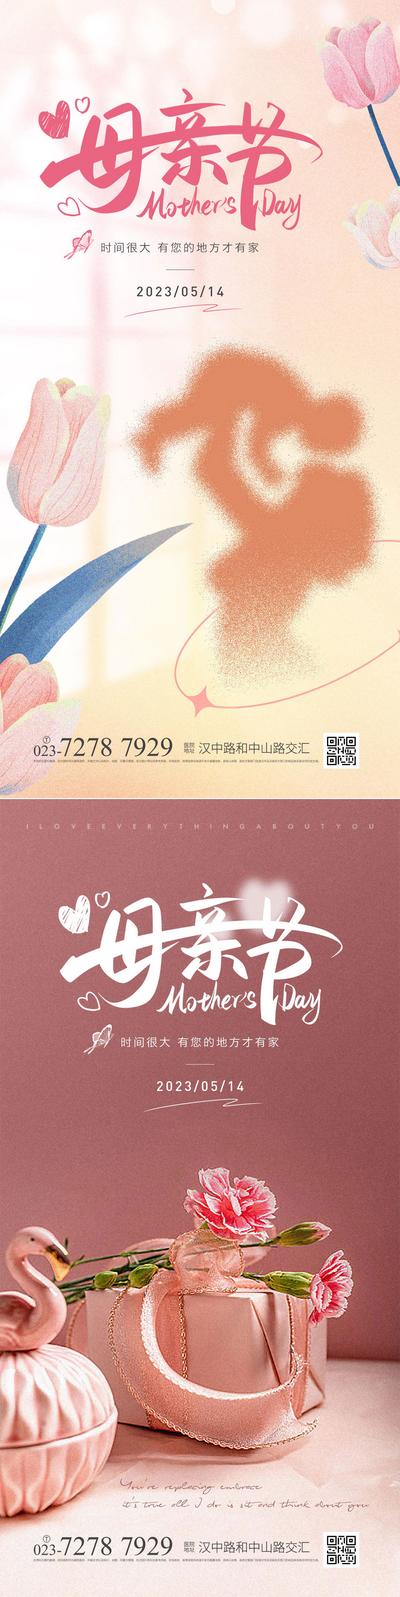 南门网 海报 公历节日 母亲节 母亲节快乐 康乃馨 温馨 系列